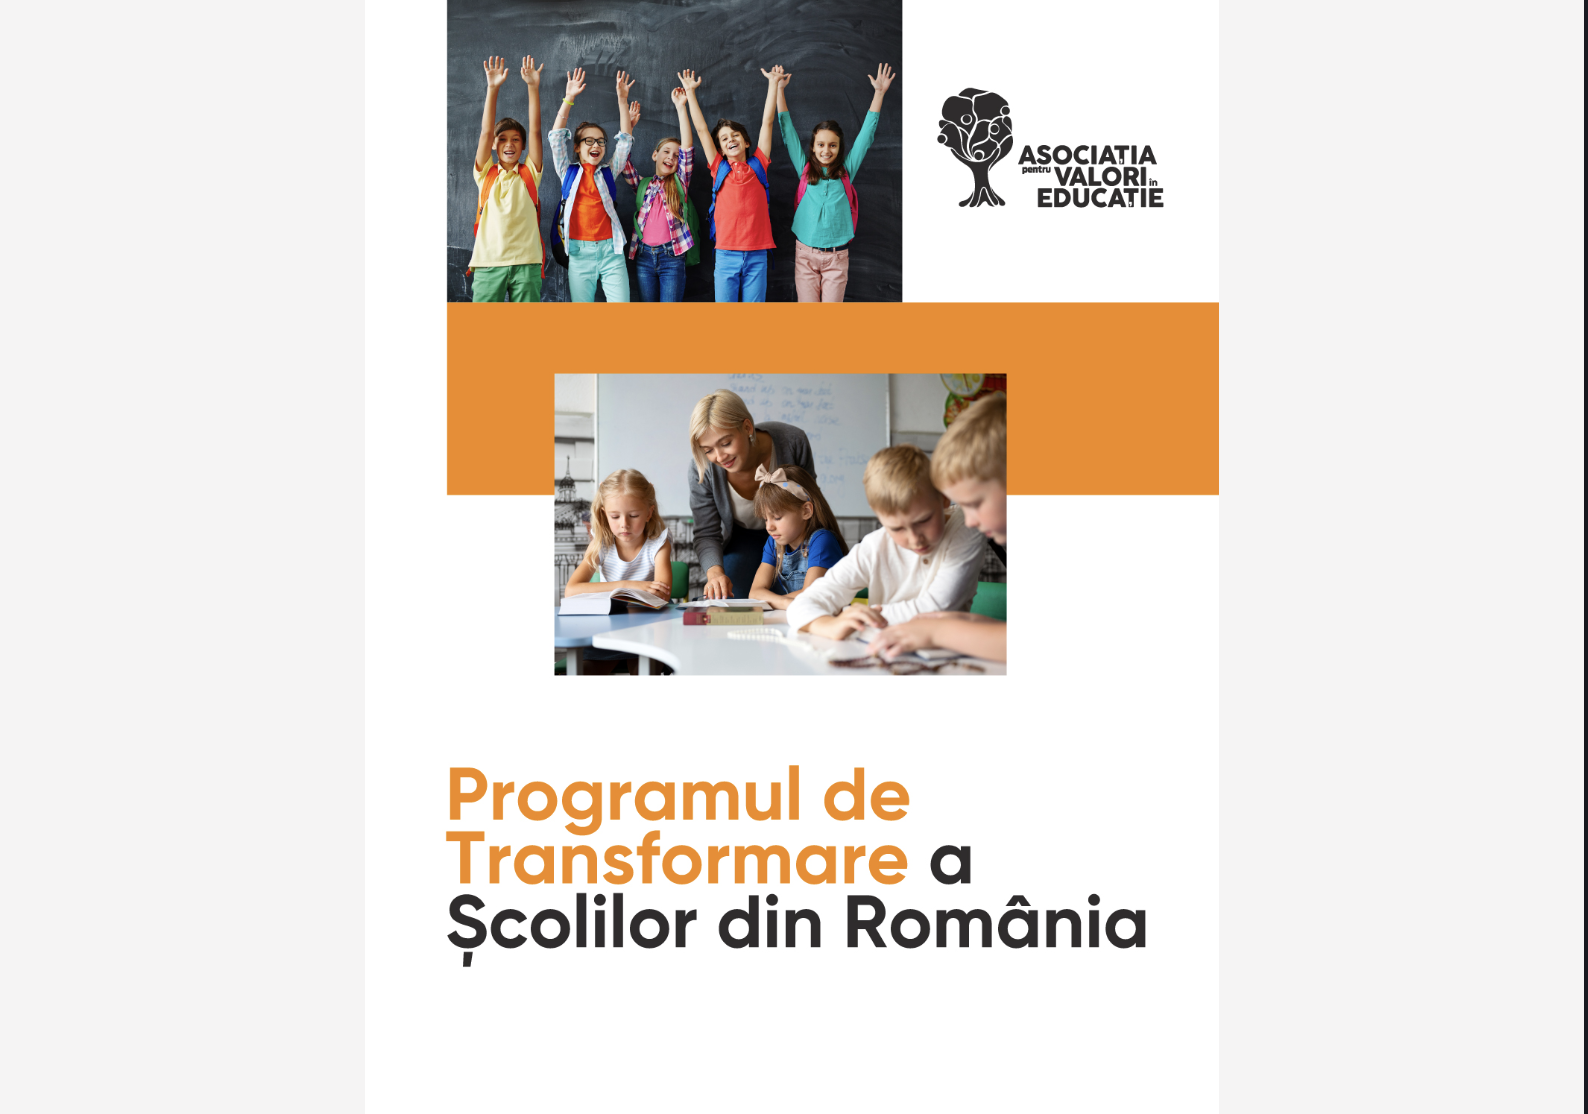 AVE oferă 200 de burse odată cu lansarea Programului de Transformare a școlii din România